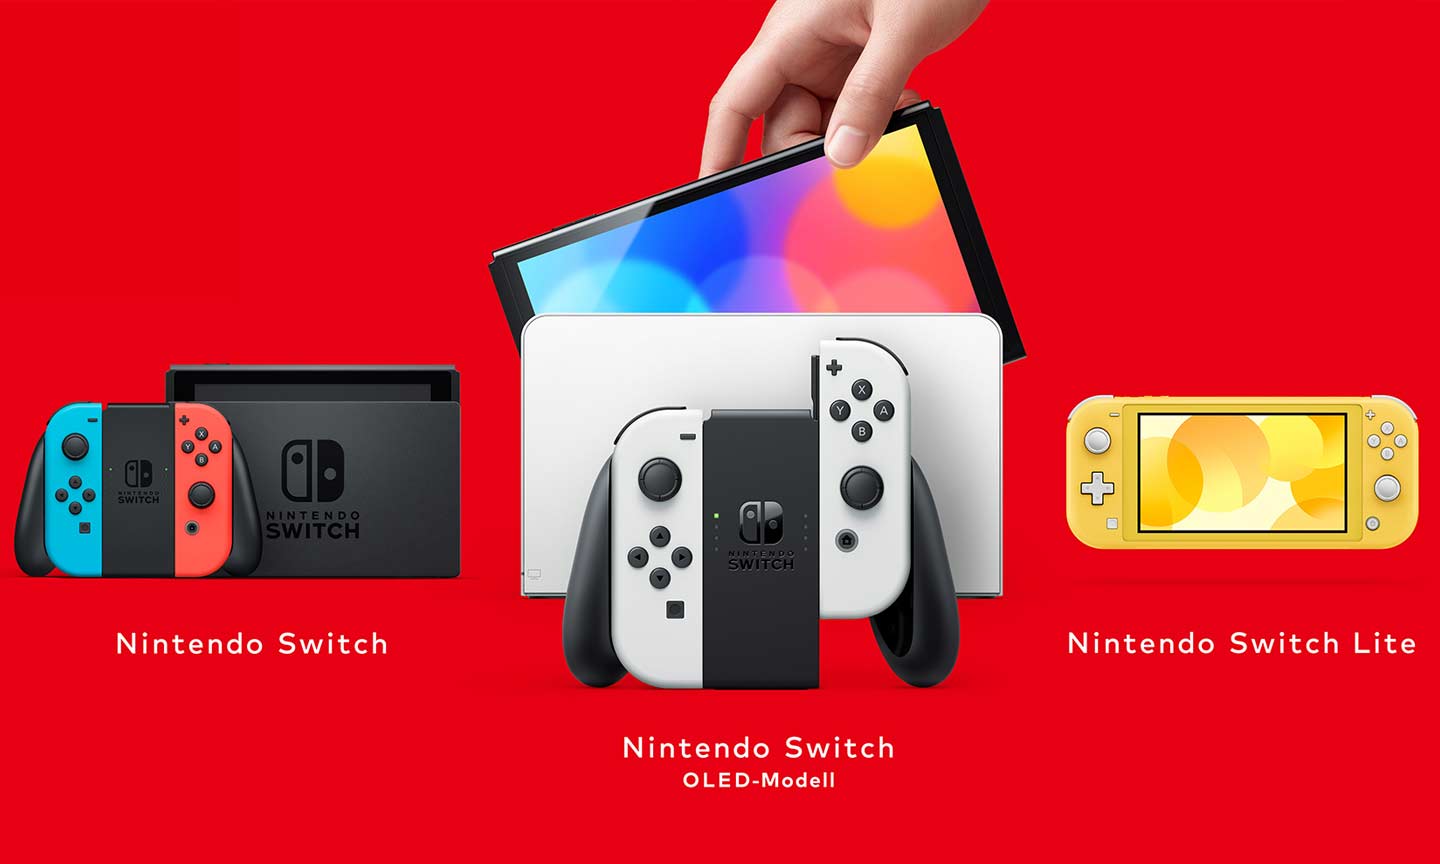 Die 3 verschiedenen Switch-Modelle: Standard (2017, bereits 2019 überarbeitet), OLED-Modell (2021) und Lite (2019). - Quelle: Nintendo